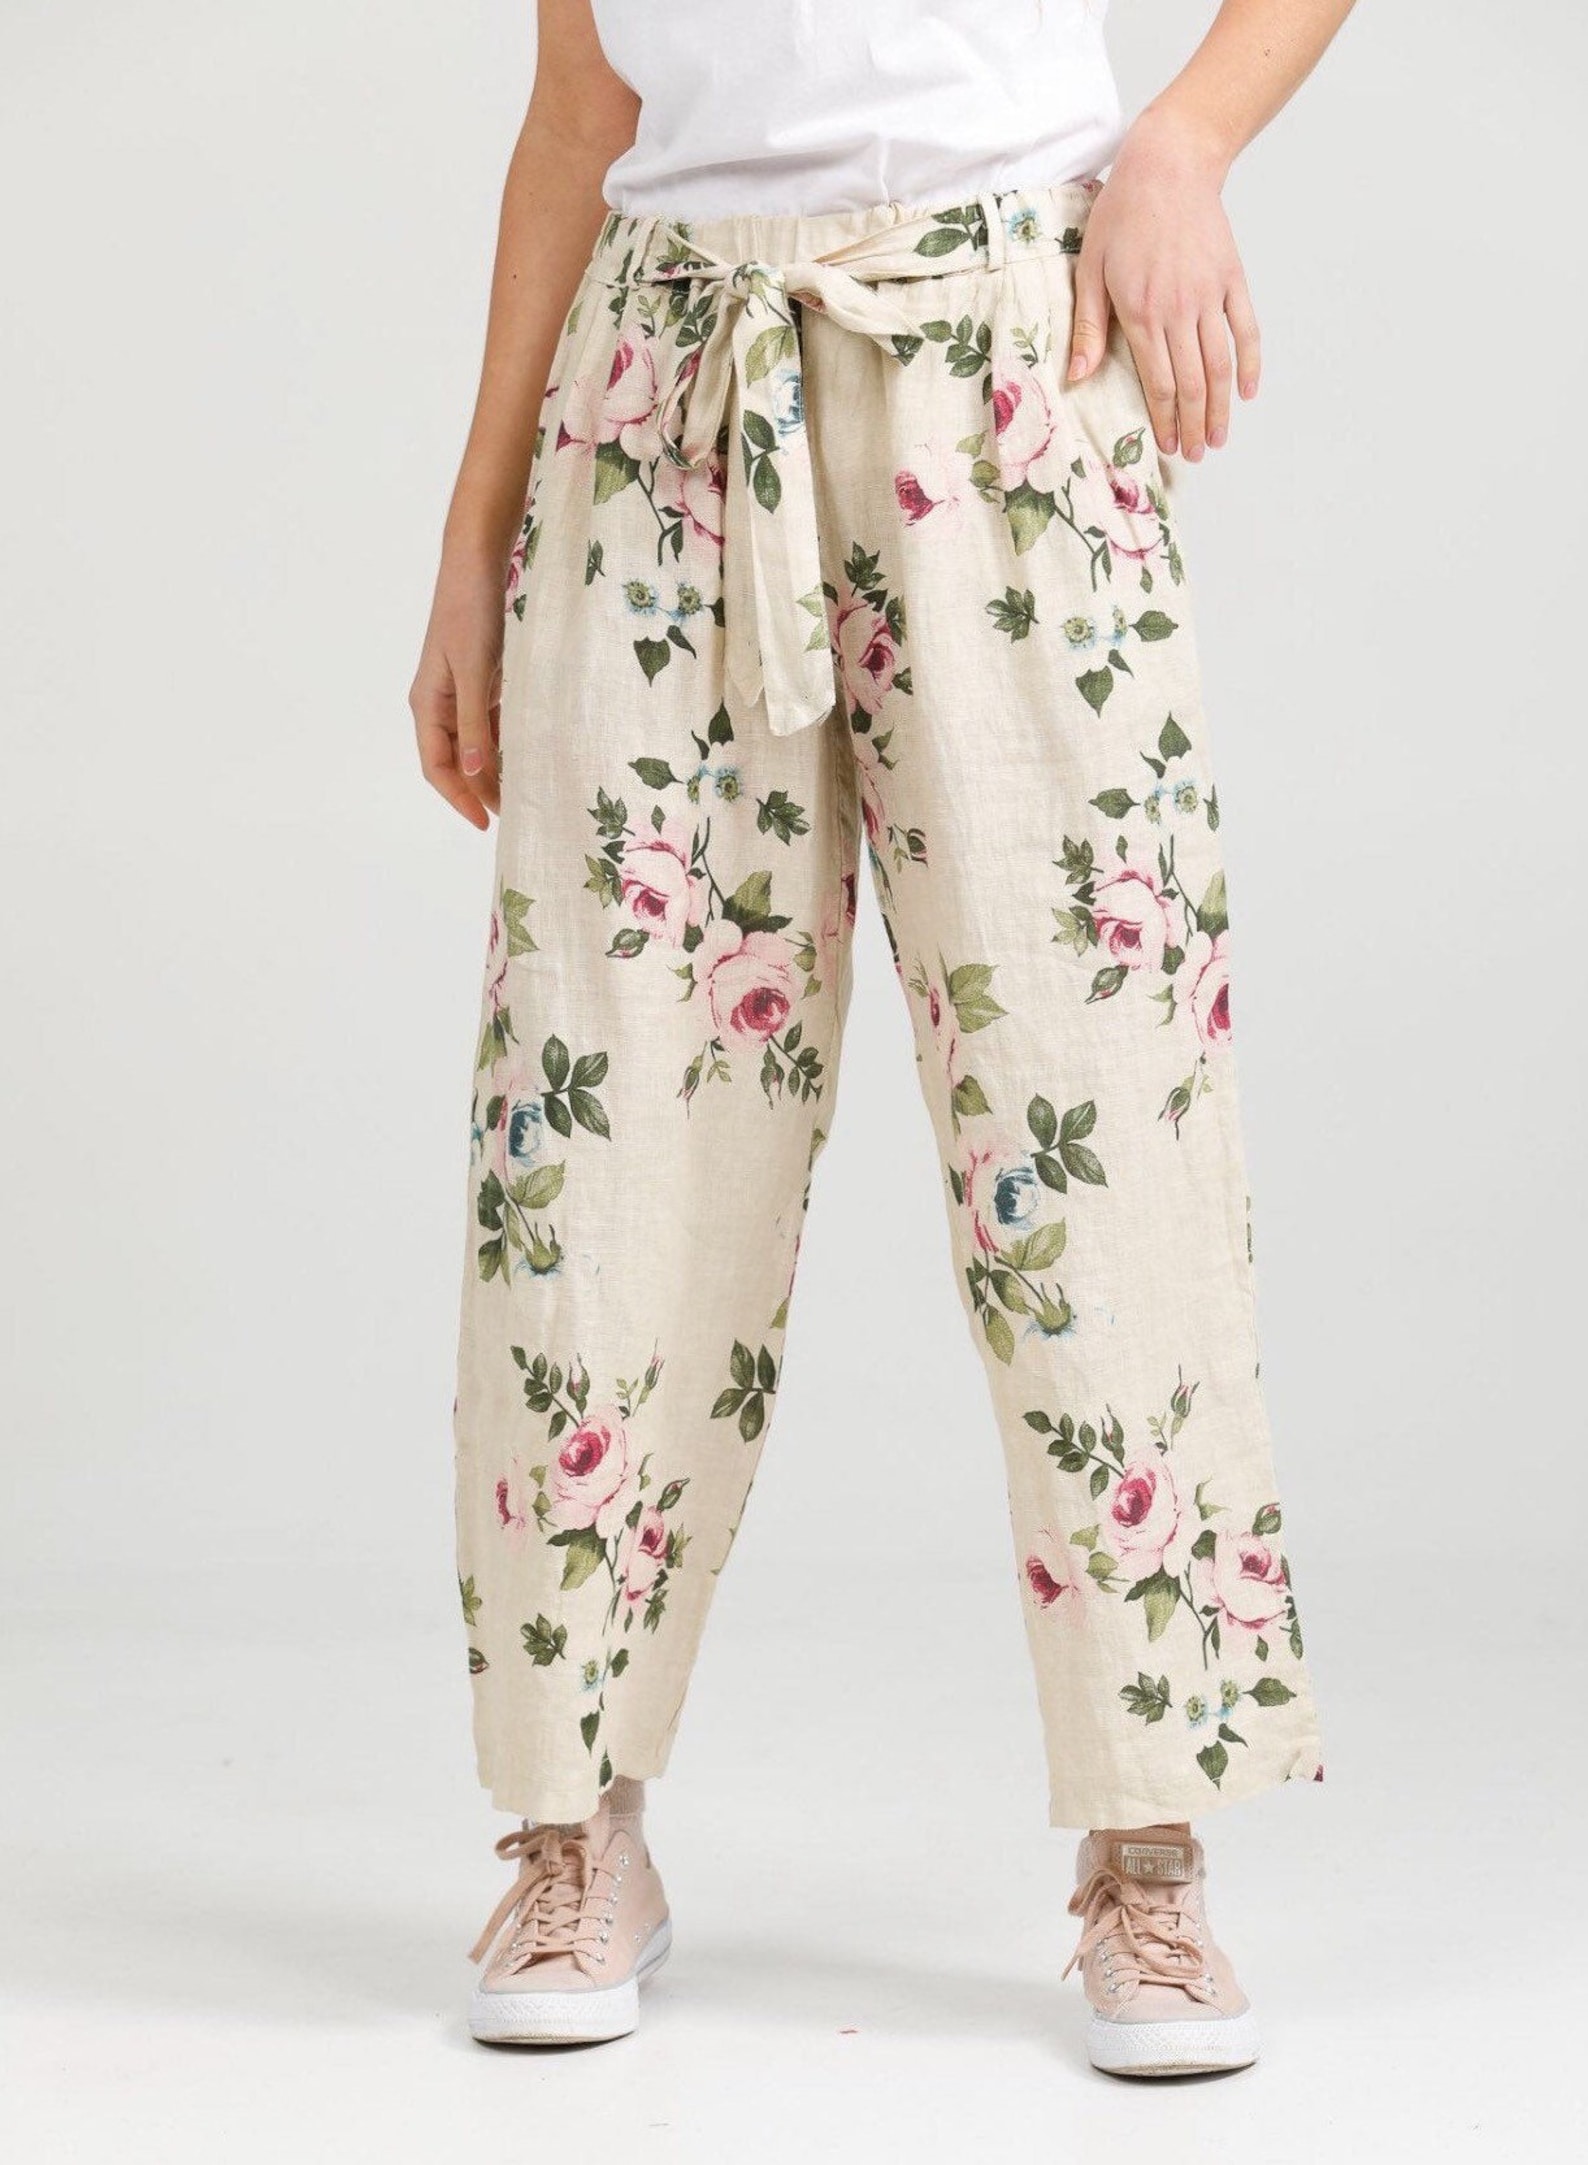 Linen trousers . Floral linen pants . Floral Eva pants by Miss | Etsy